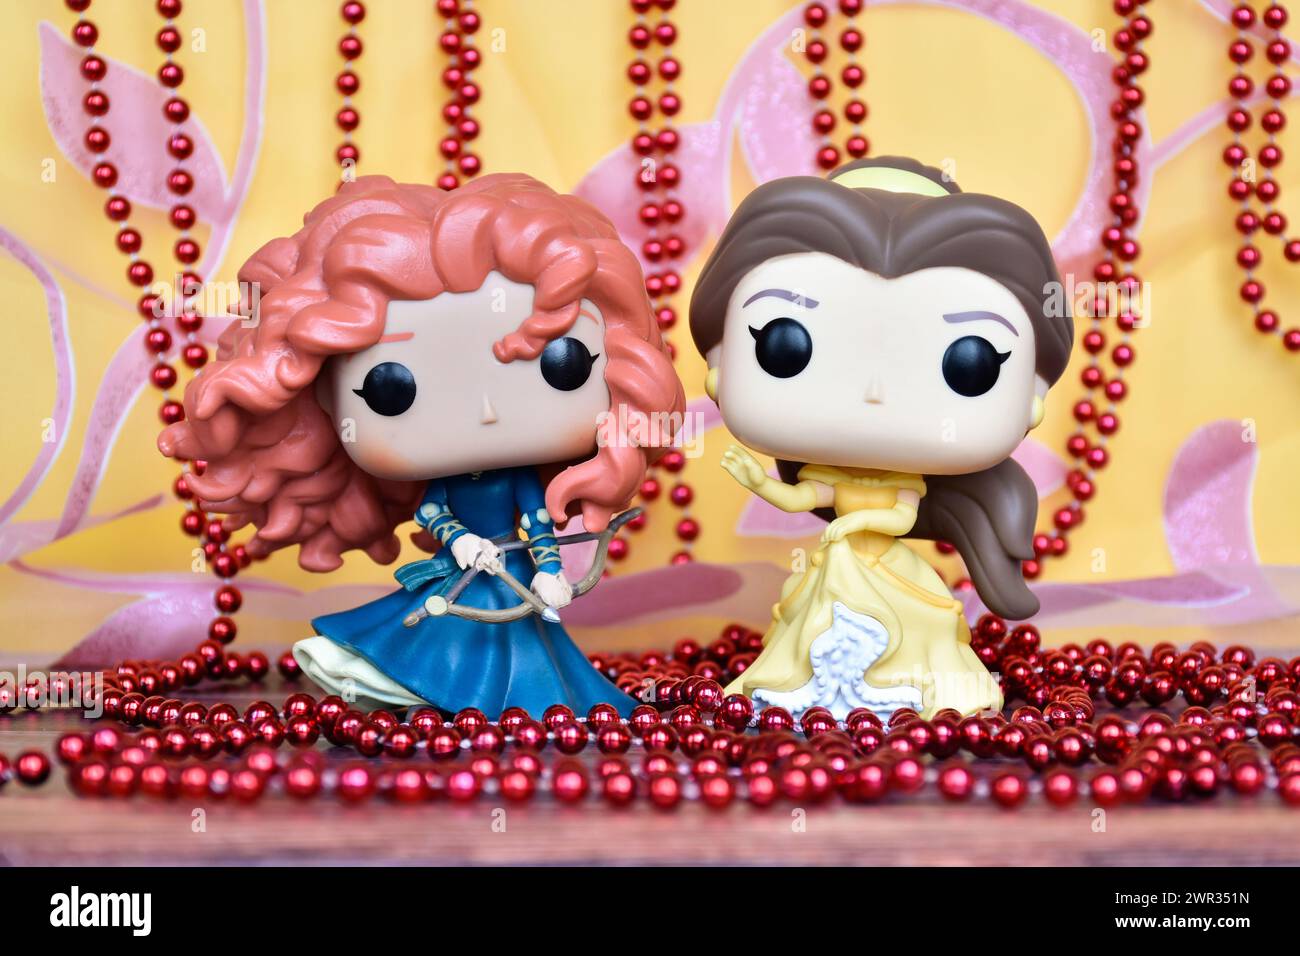 Funko Pop Actionfiguren der Disney Prinzessinnen Merida (tapfer) und Belle (Schönheit und das Biest). Goldener rosa Vorhang, rote Halskette, fabelhafter Palast. Stockfoto